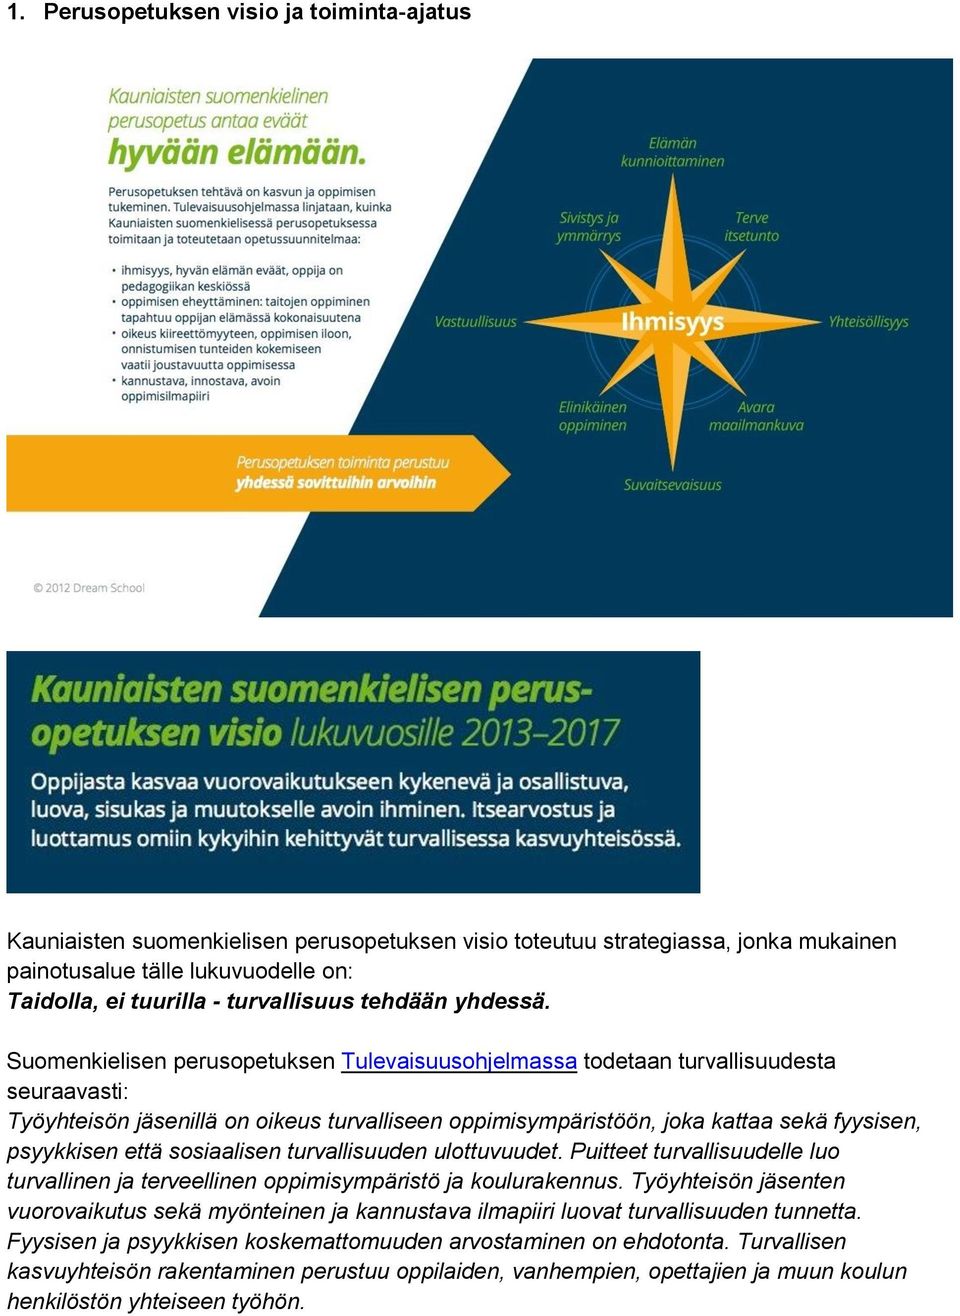 Suomenkielisen perusopetuksen Tulevaisuusohjelmassa todetaan turvallisuudesta seuraavasti: Työyhteisön jäsenillä on oikeus turvalliseen oppimisympäristöön, joka kattaa sekä fyysisen, psyykkisen että